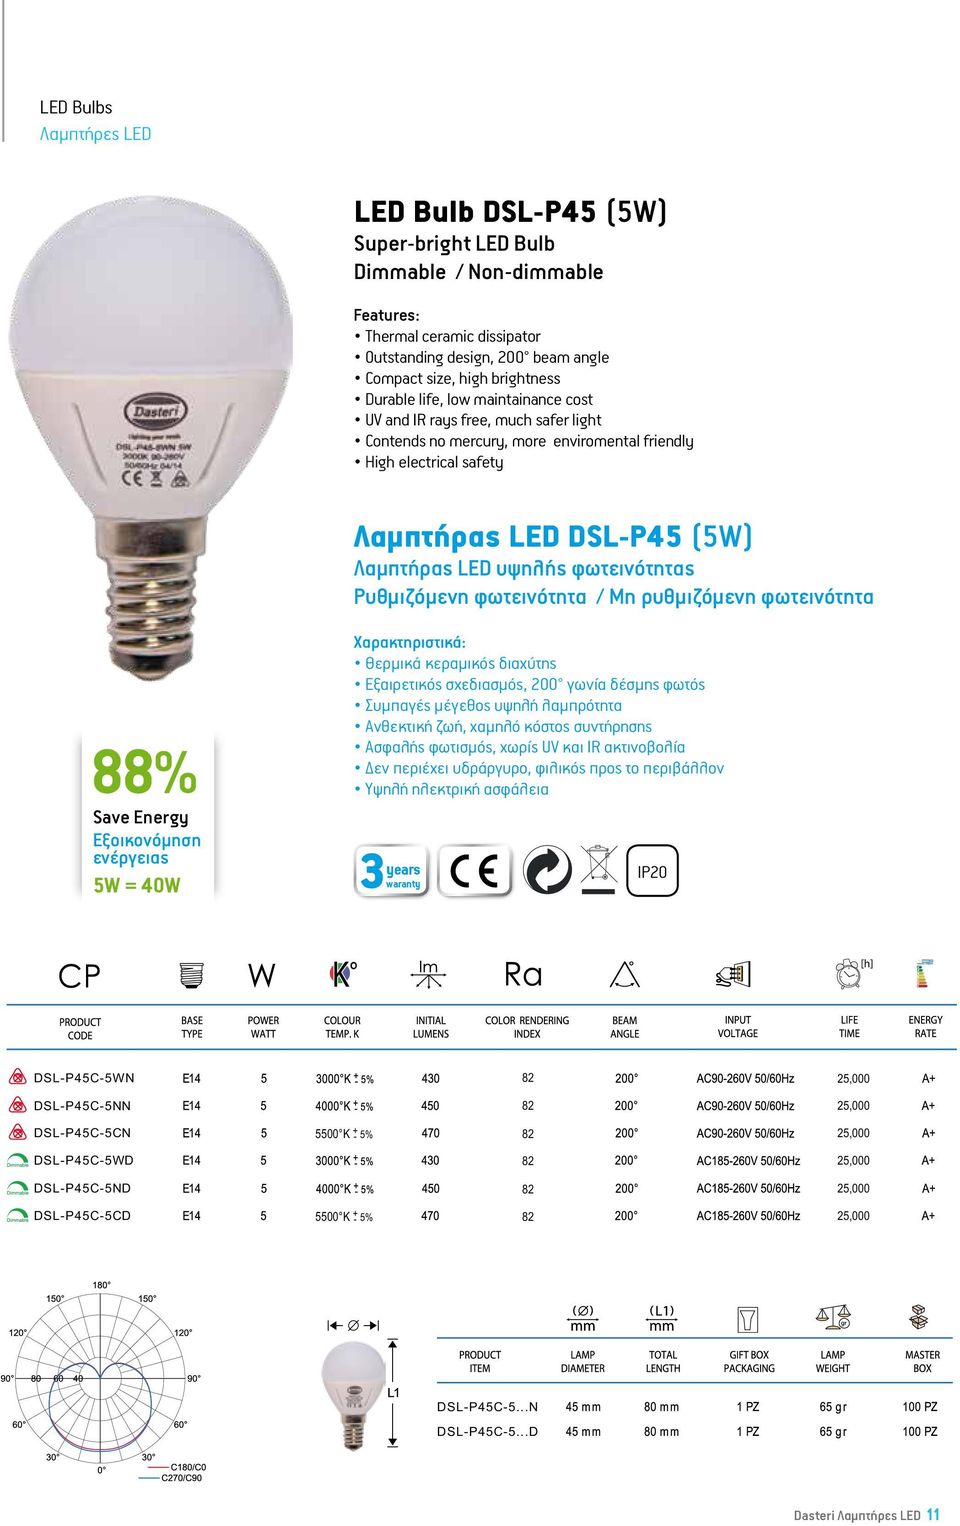 σχεδιασμός, 200 γωνία δέσμης φωτός Συμπαγές μέγεθος υψηλή λαμπρότητα 88% Υψηλή ηλεκτρική ασφάλεια IP20 LED P45 Bulb- 5W = 40W 5W Super-bright LED Bulb